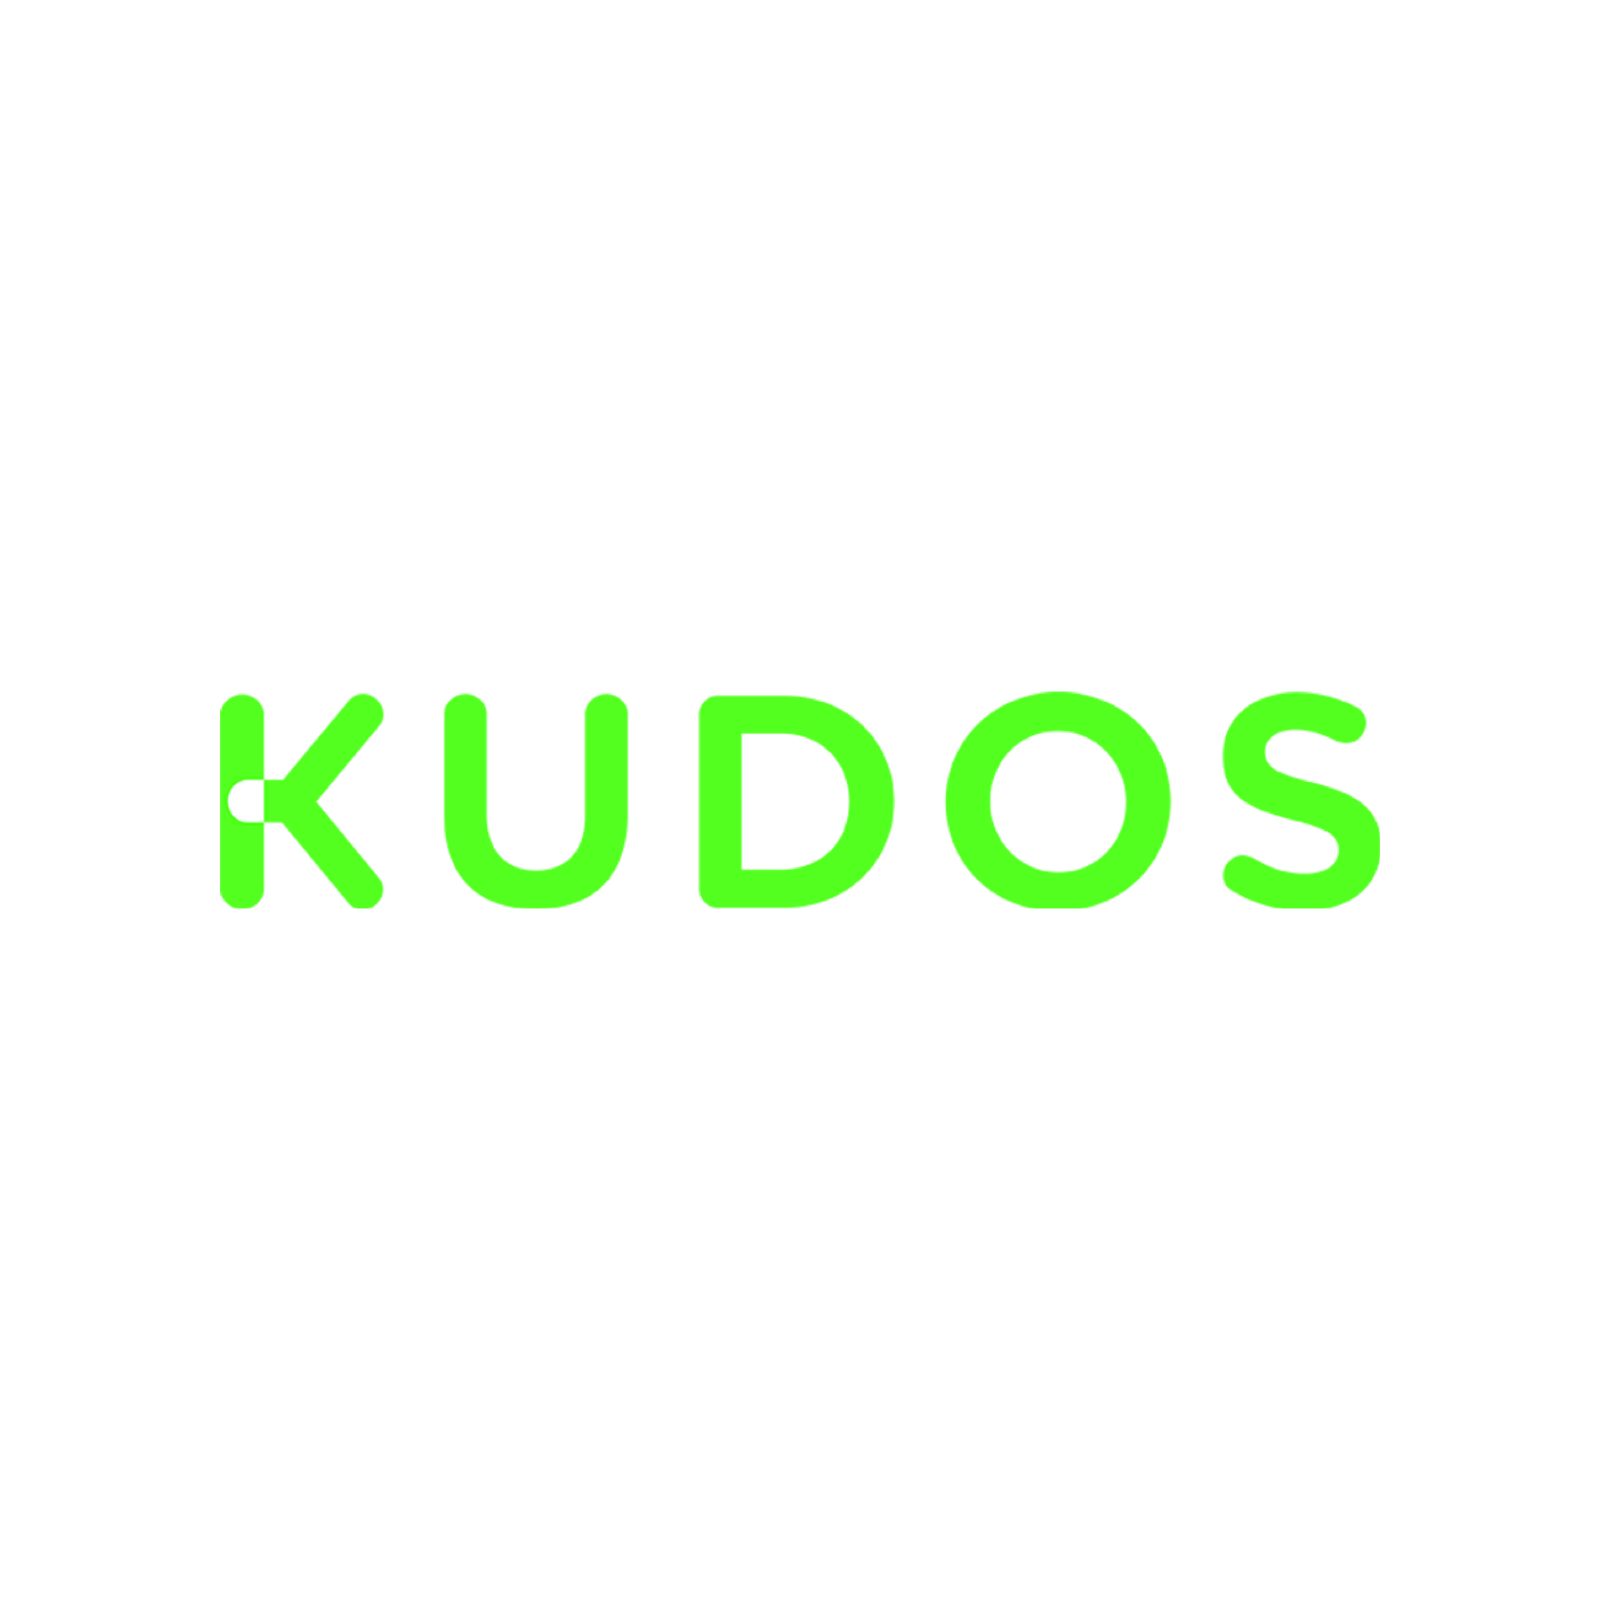 Kudos Productions logo